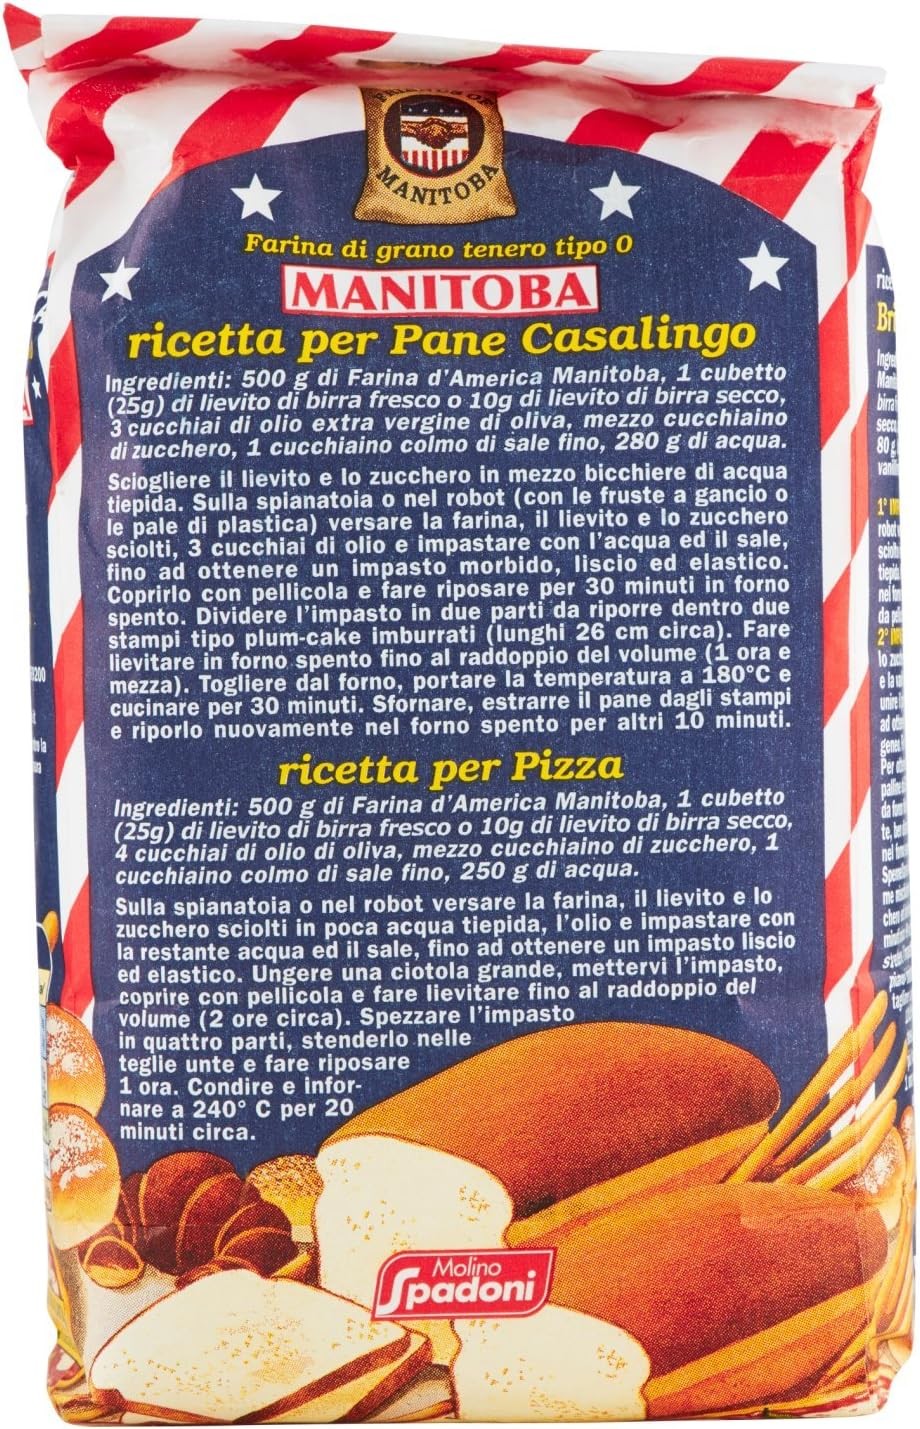 Farine Molino Spadoni Manitoba Farina d'America 1kg